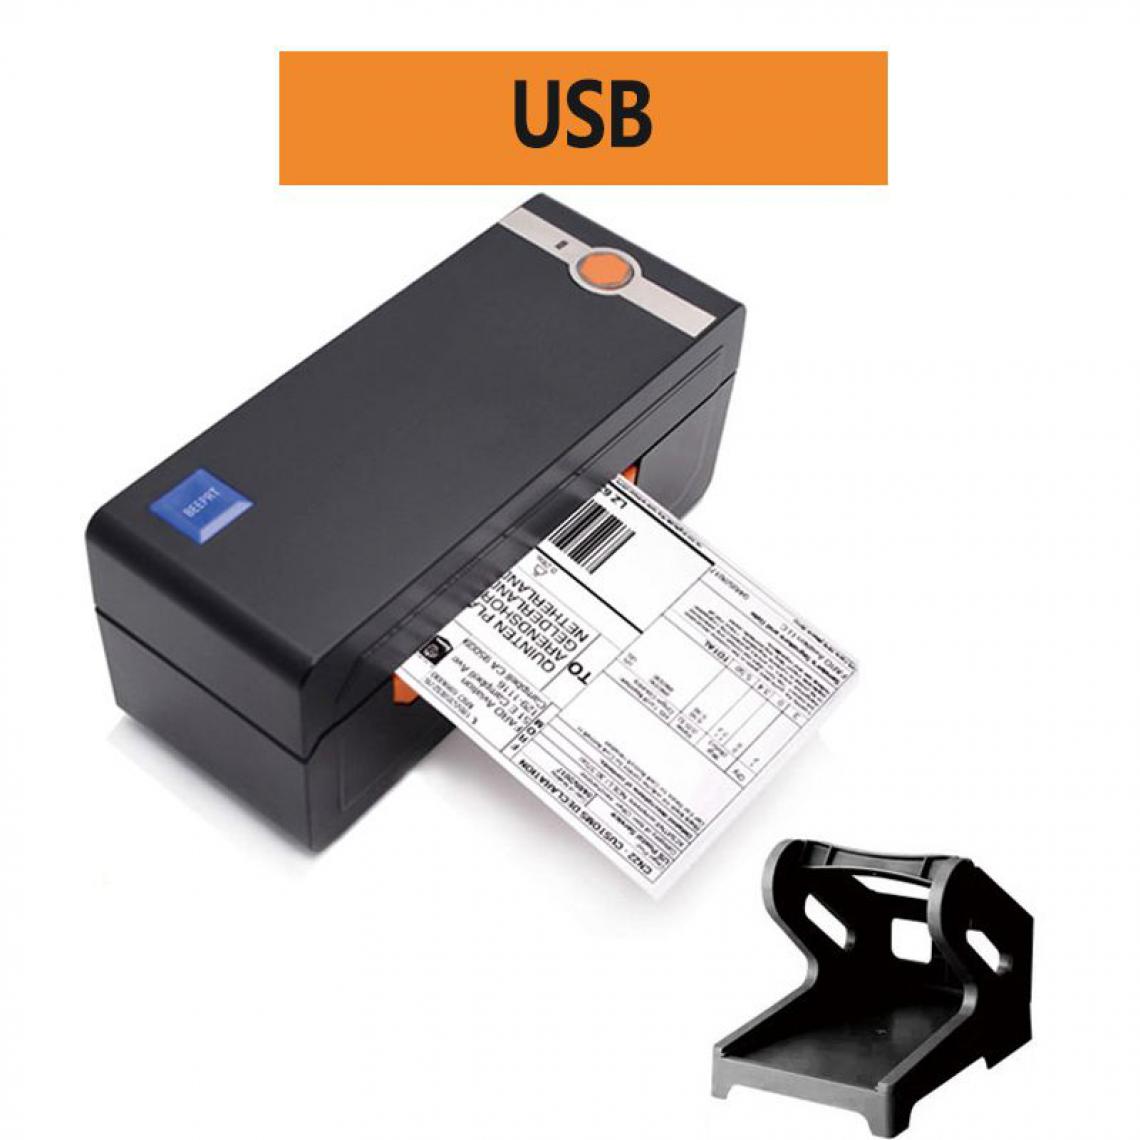 Generic - Imprimante Thermique Portable de Tickets de Caisse 20 à 80 mm avec Holder , Connexion par  USB  , Compatible avec Mac OS / IOS ,Linux , Window et  Android,- 8.2  * 9.2  * 20 cm  - Noir  - Imprimantes d'étiquettes